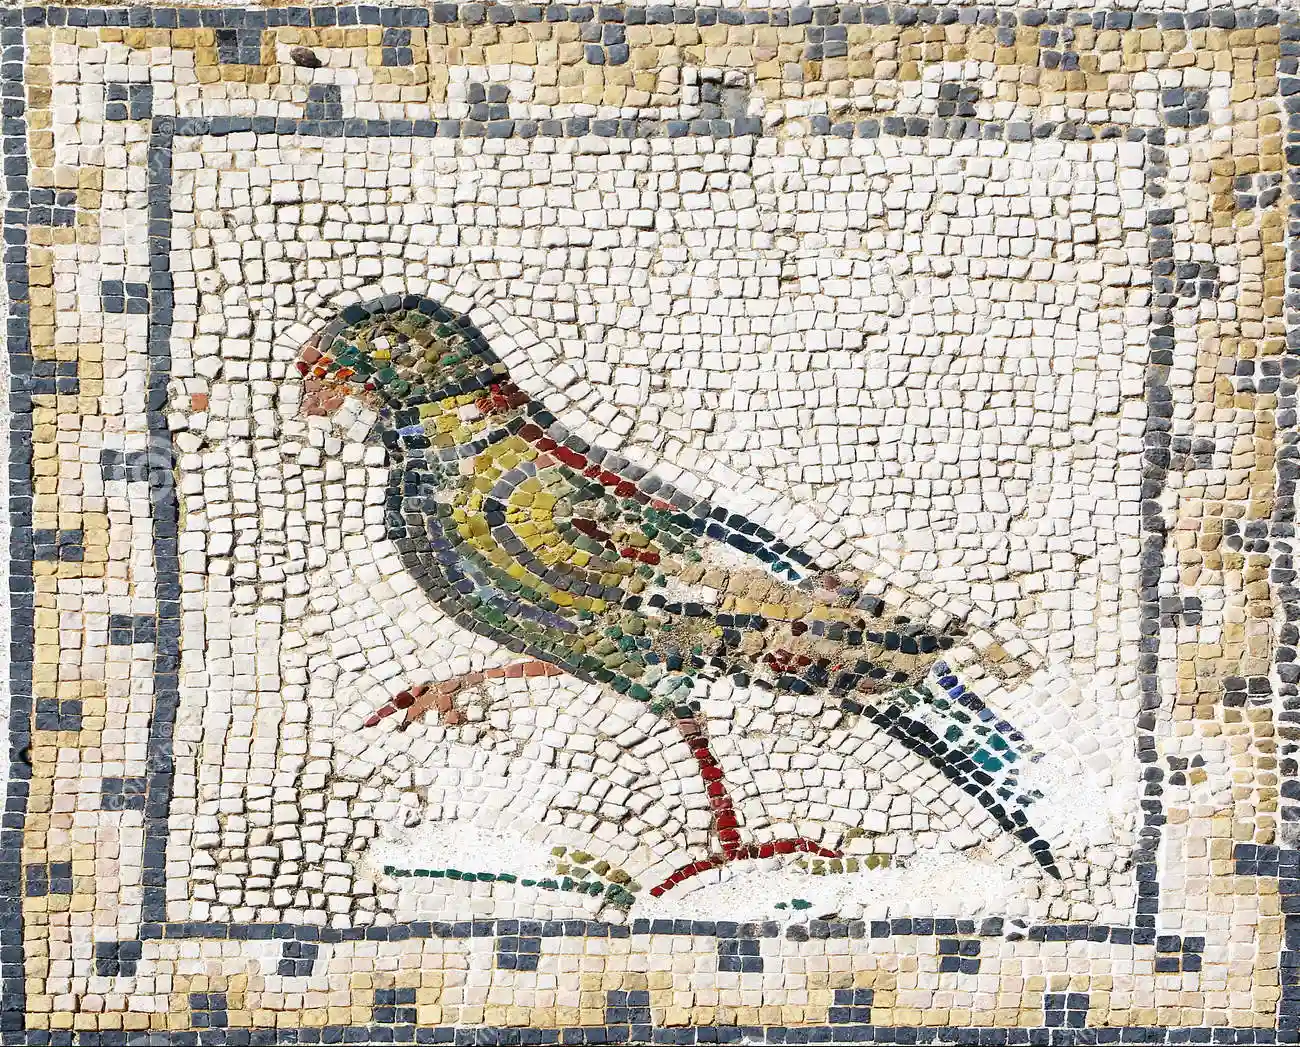 Italica, Sevilla, Spagna - mosaico romano antico che rappresenta un pappagallo dal sito archeologico